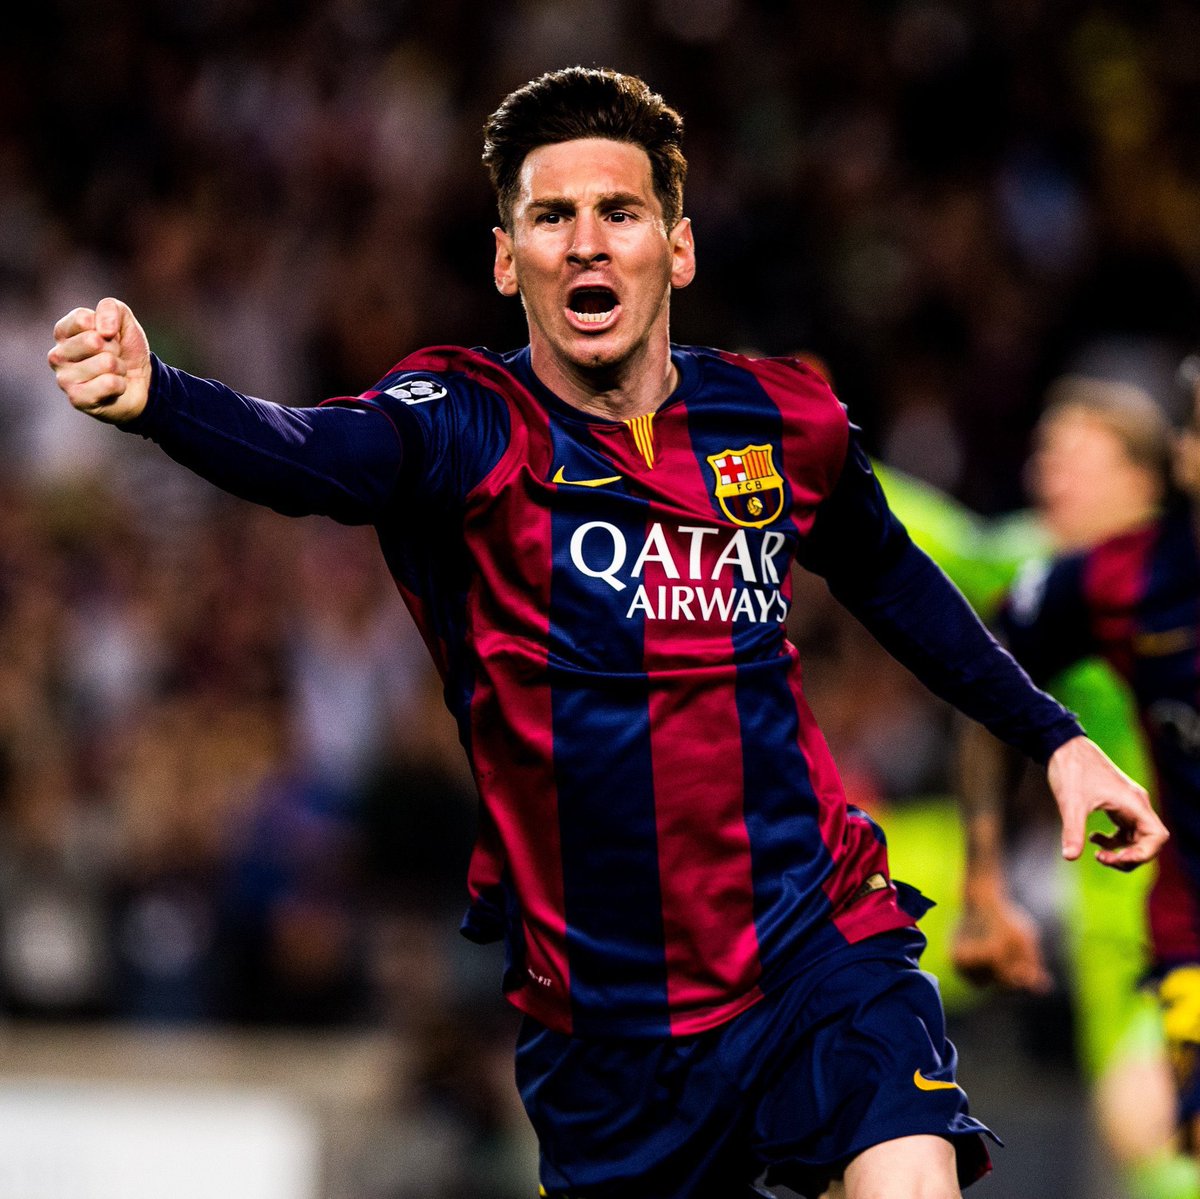 💣💥 𝗕𝗥𝗘𝗔𝗞𝗜𝗡𝗚 !

La décision sur le futur de Leo Messi se fera dans quelques jours. Des sources consultées par @mundodeportivo confirment que sa décision est imminente. @ffpolo ✍️

Même son de cloche pour @sport. On devrait être fixé rapidement.